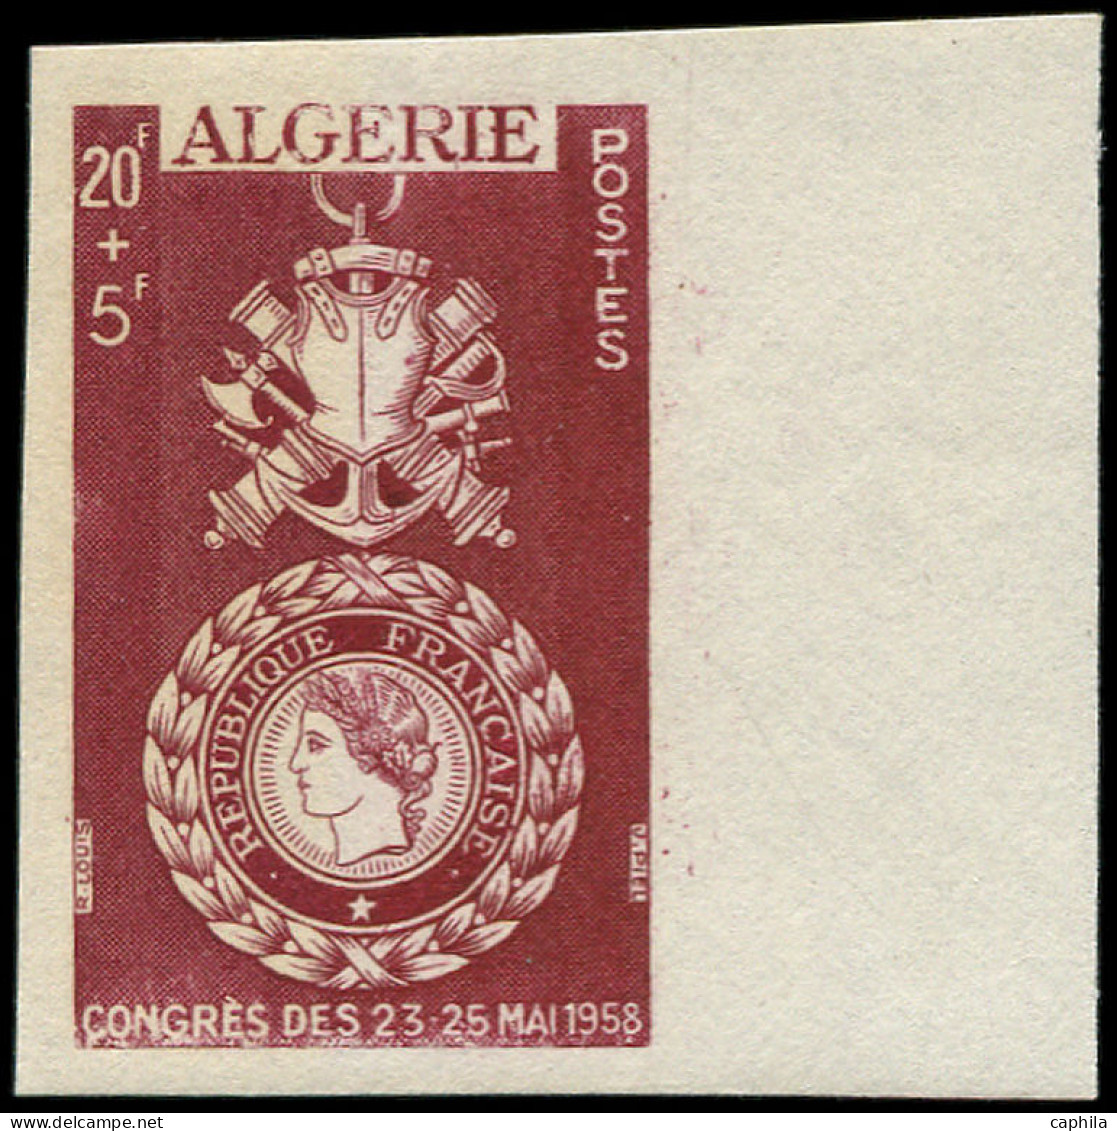 ALGERIE Poste ** - Maury 363A, Non émis, Essai Non Dentelé: Congrès Des 23-25 Mai 1958, Médaille Militaire - Cote: 3500 - Neufs